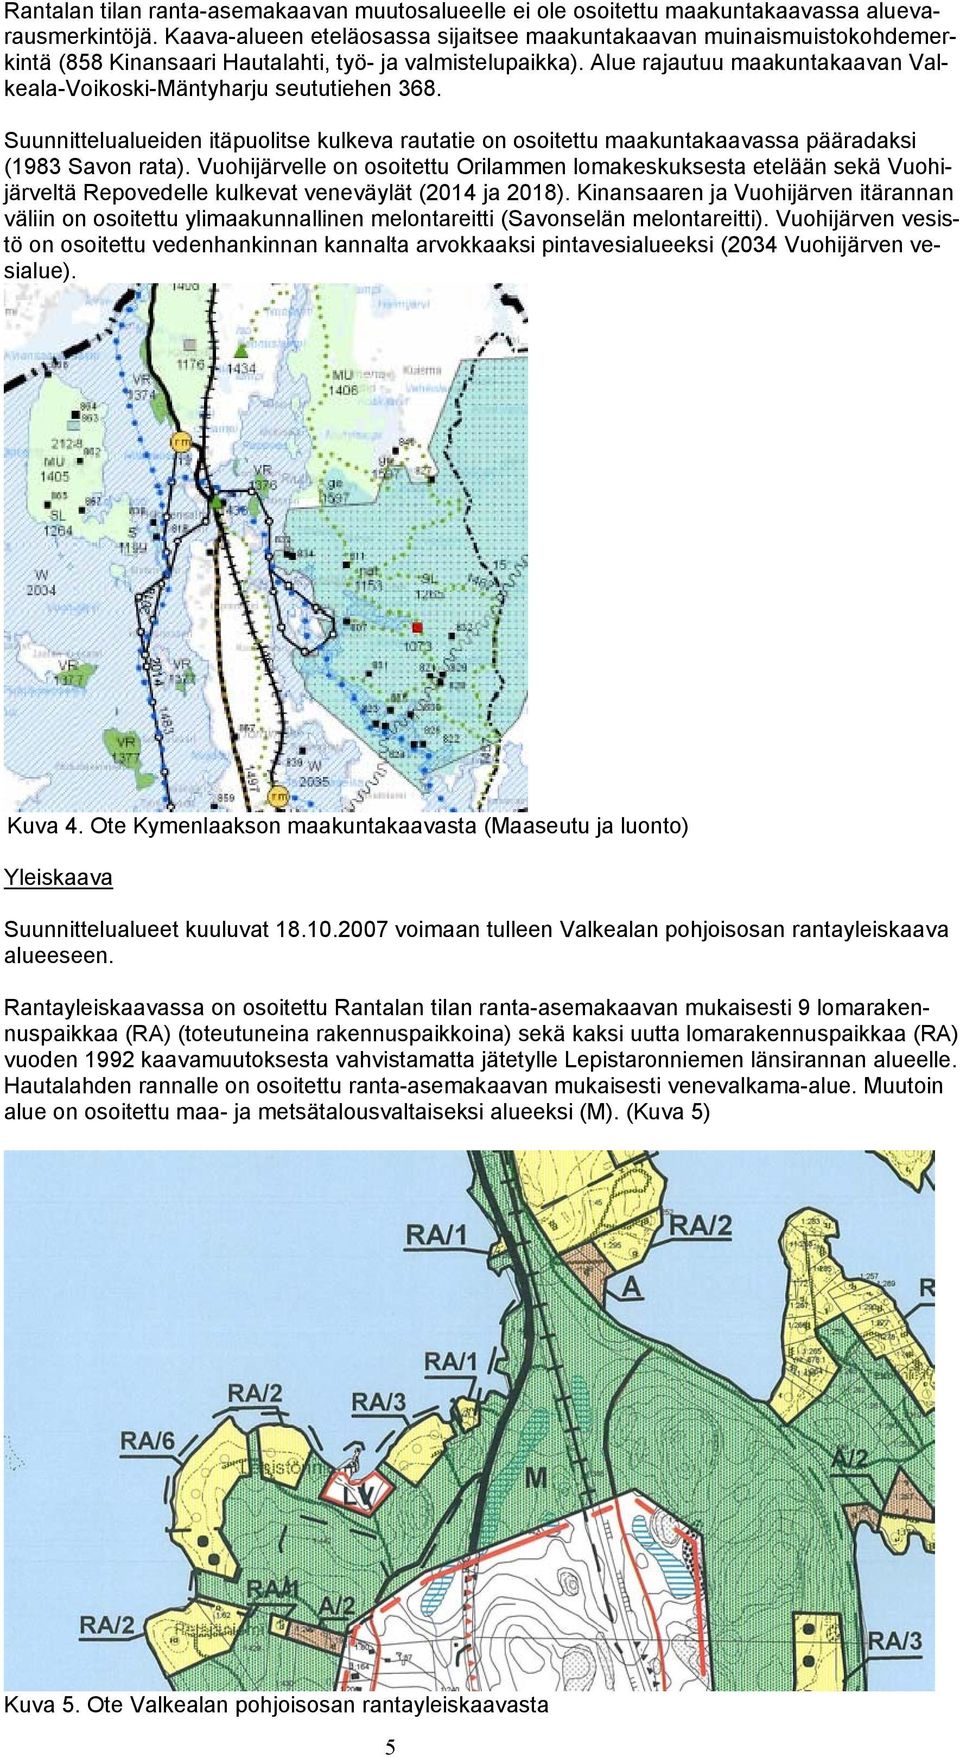 Alue rajautuu maakuntakaavan Valkeala-Voikoski-Mäntyharju seututiehen 368. Suunnittelualueiden itäpuolitse kulkeva rautatie on osoitettu maakuntakaavassa pääradaksi (1983 Savon rata).